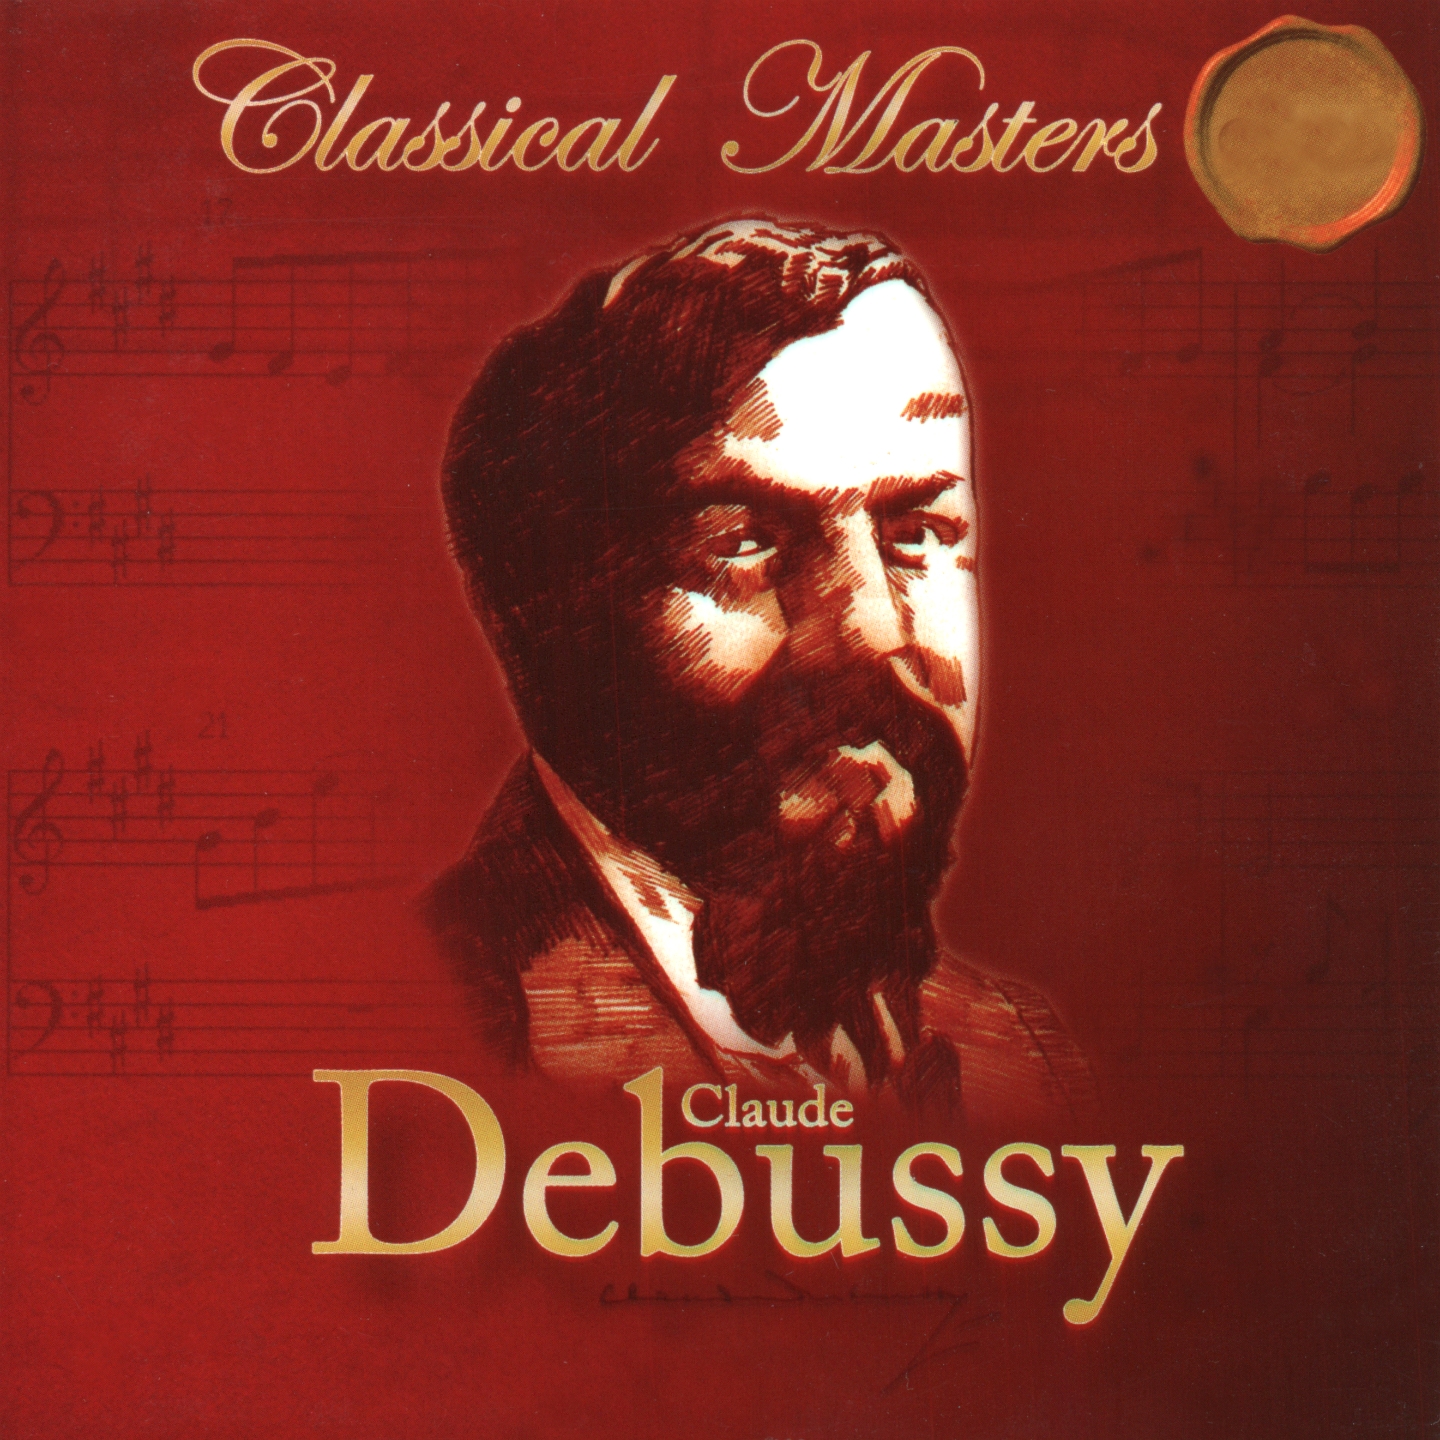 Debussy: Suite bergamasque, L. 75, Pre lude a l' apre smidi d' un faune, L. 86, Children' s Corner, L. 113  Syrinx, L. 129